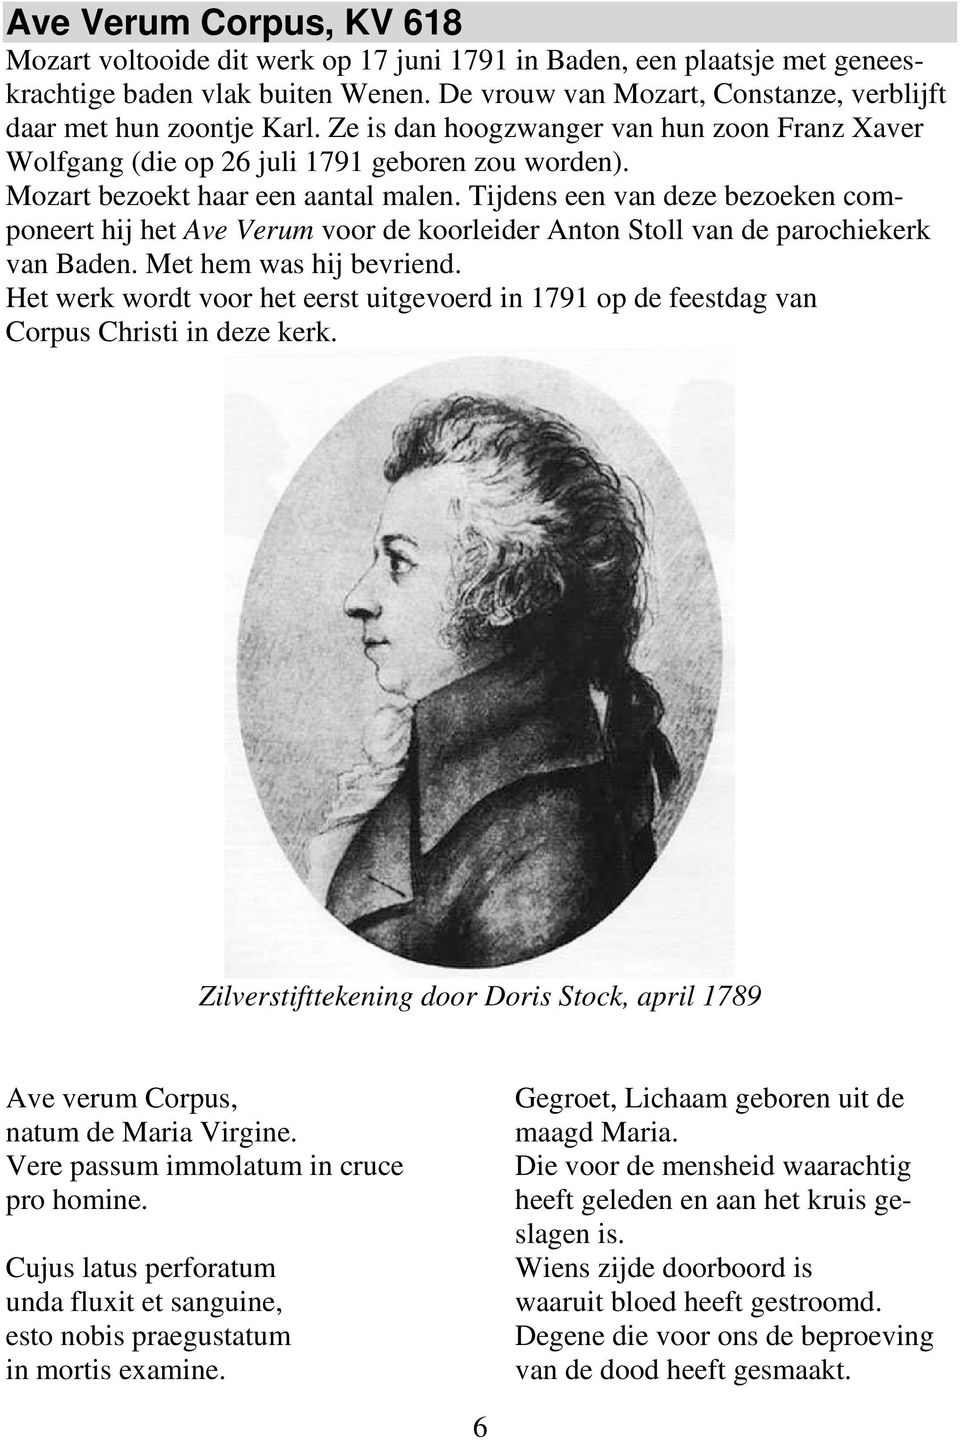 Mozart bezoekt haar een aantal malen. Tijdens een van deze bezoeken componeert hij het Ave Verum voor de koorleider Anton Stoll van de parochiekerk van Baden. Met hem was hij bevriend.